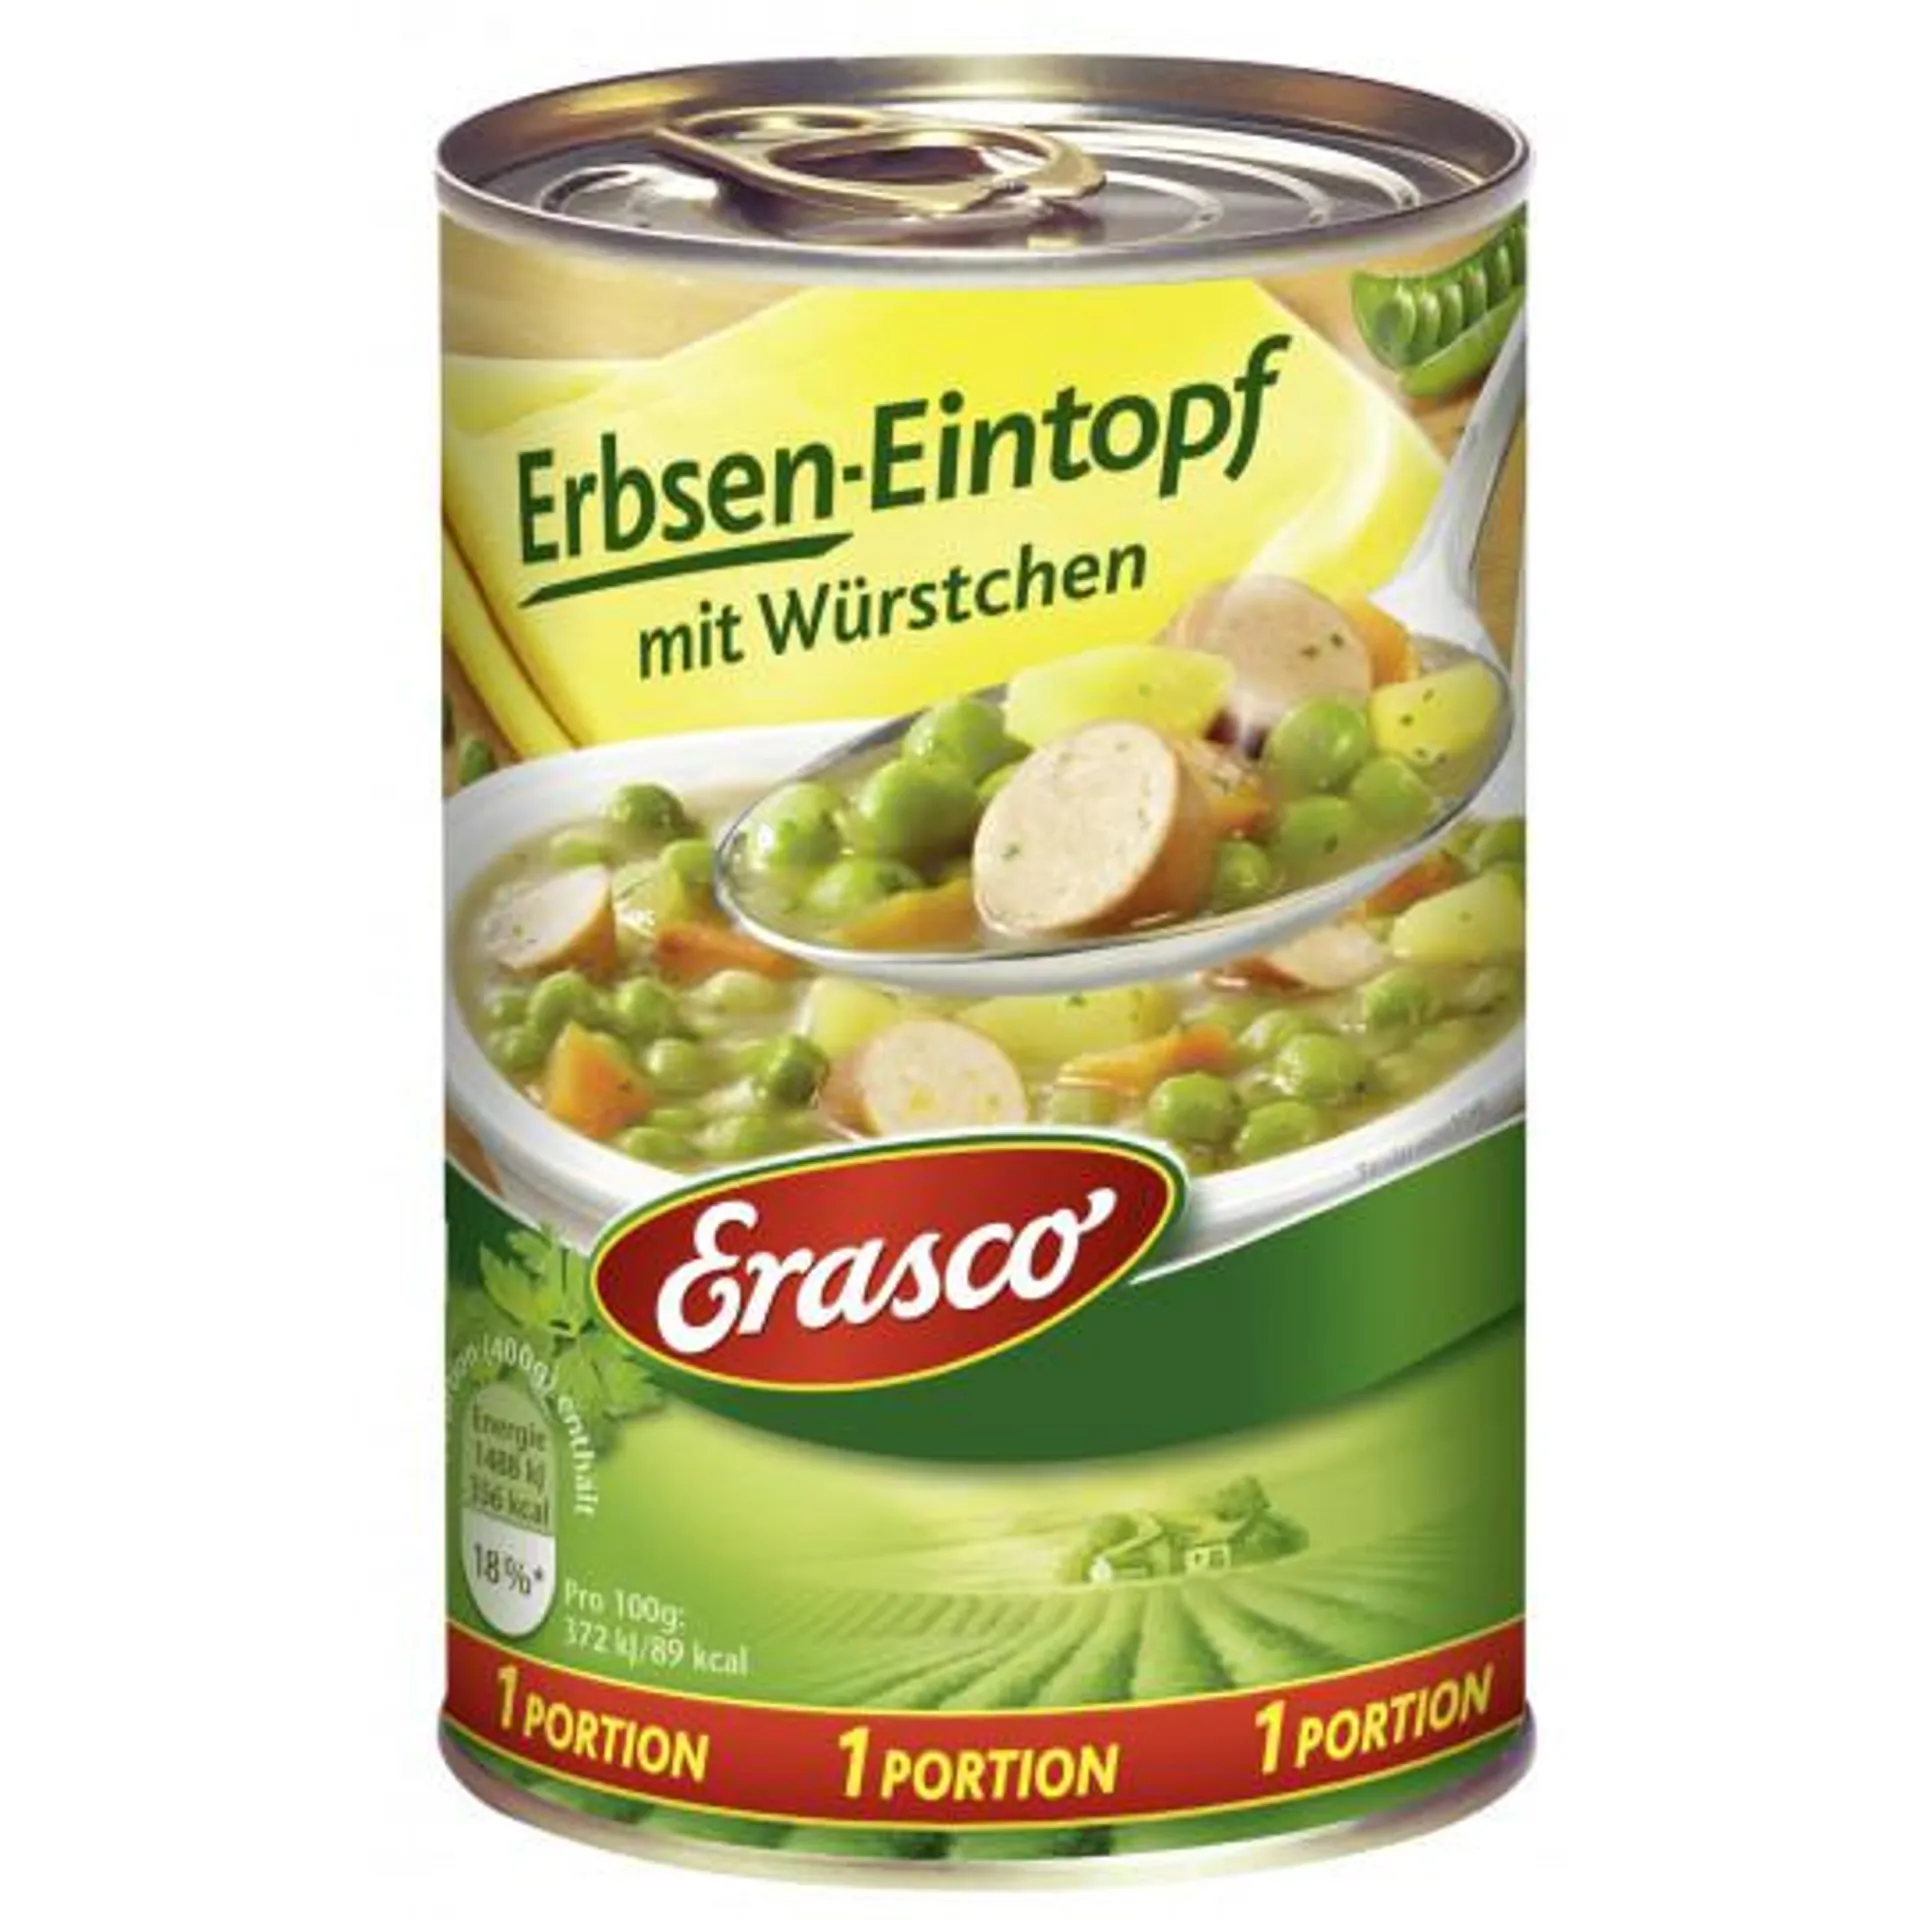 Erasco Erbsen-Eintopf mit Würstchen 1 Portion 400G